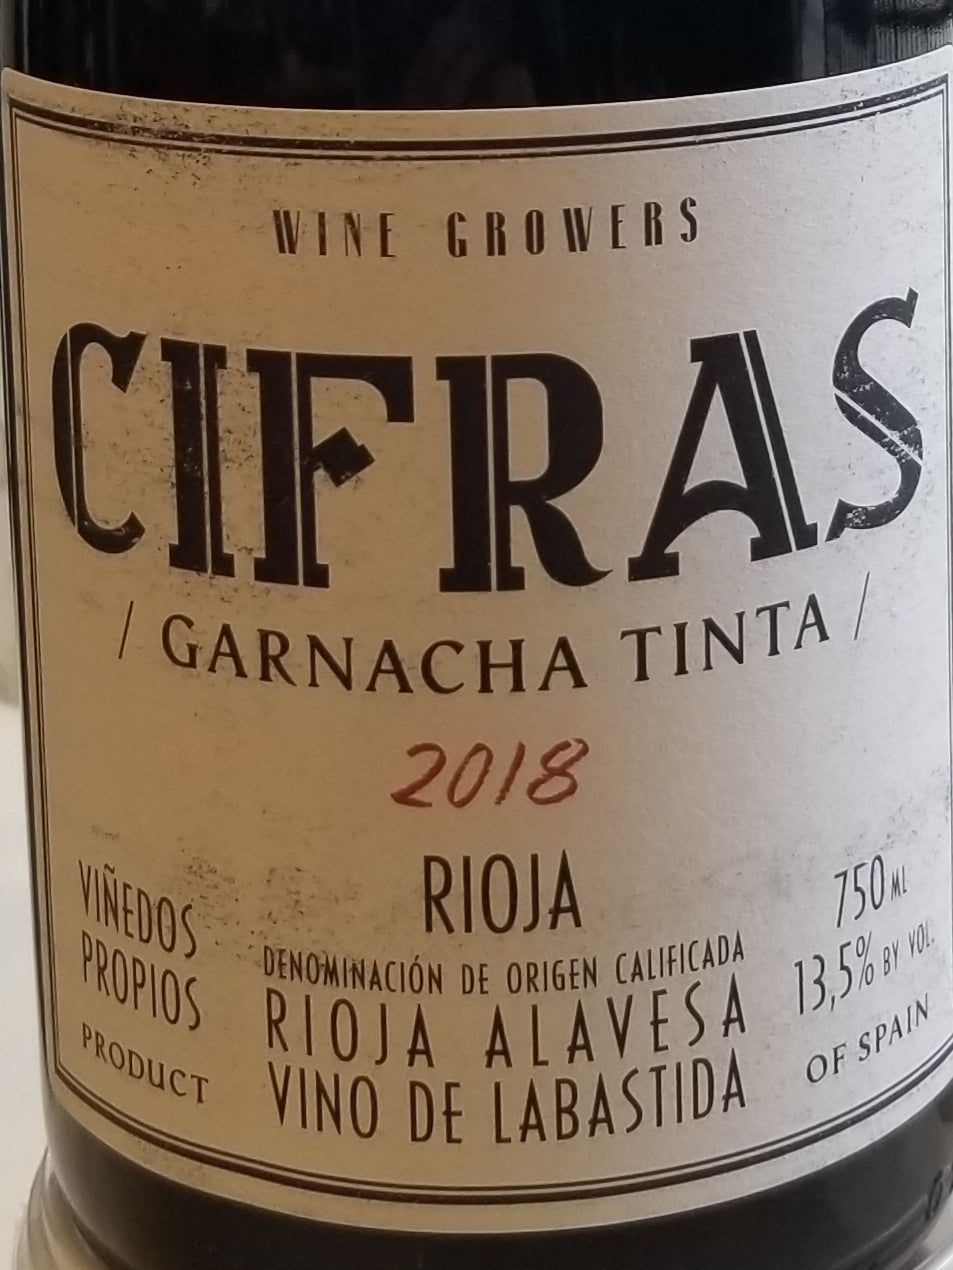 Cifras Garnacha Tinta - Rioja